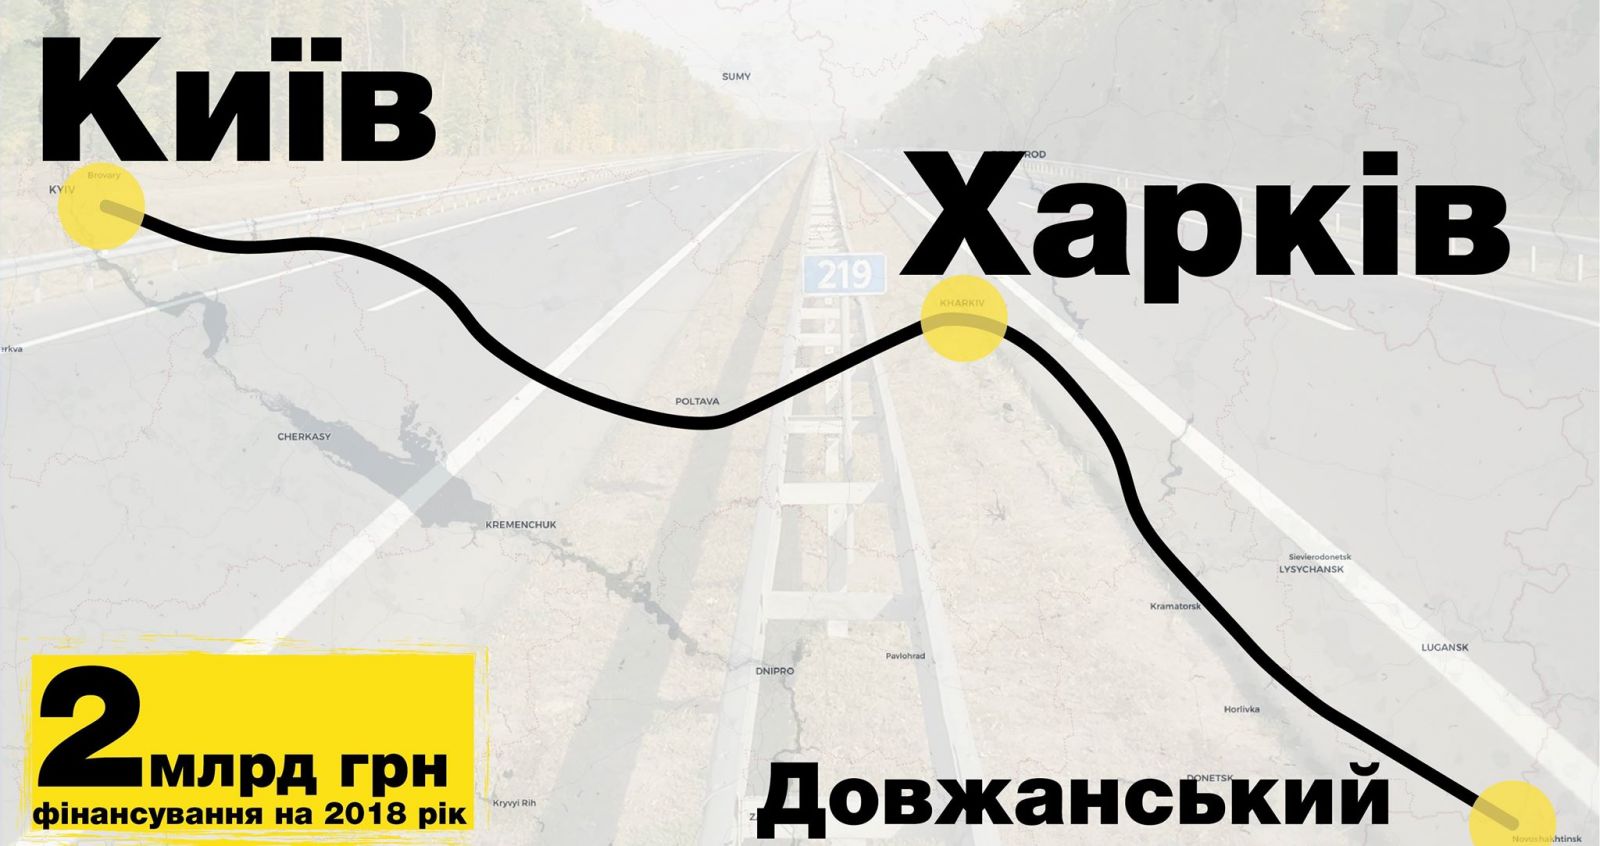 Участок трассы Киев-Харьков отремонтируют за 626 миллионов гривен